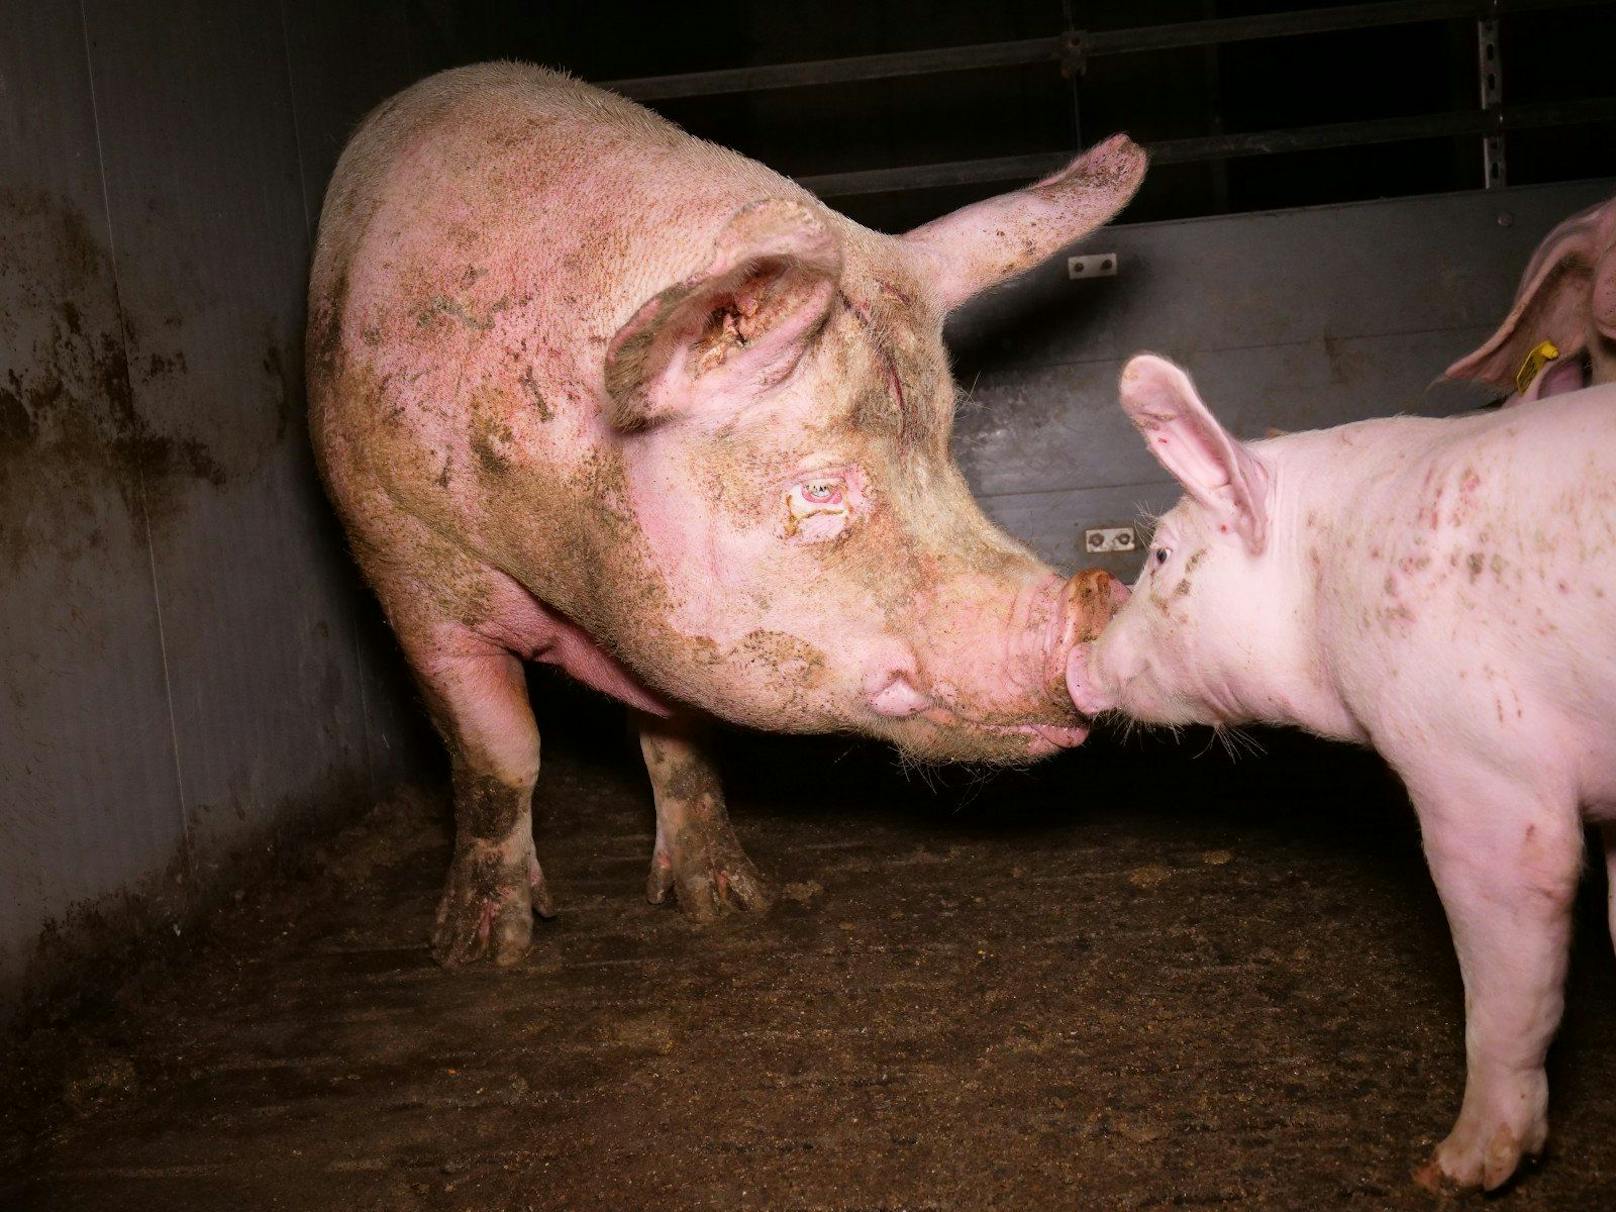 Auch drei große Mutterschweine (zwei davon extrem mager) sind in der Mast untergebracht. Auch ihr Gesundheitszustand scheint sehr schlecht zu sein.